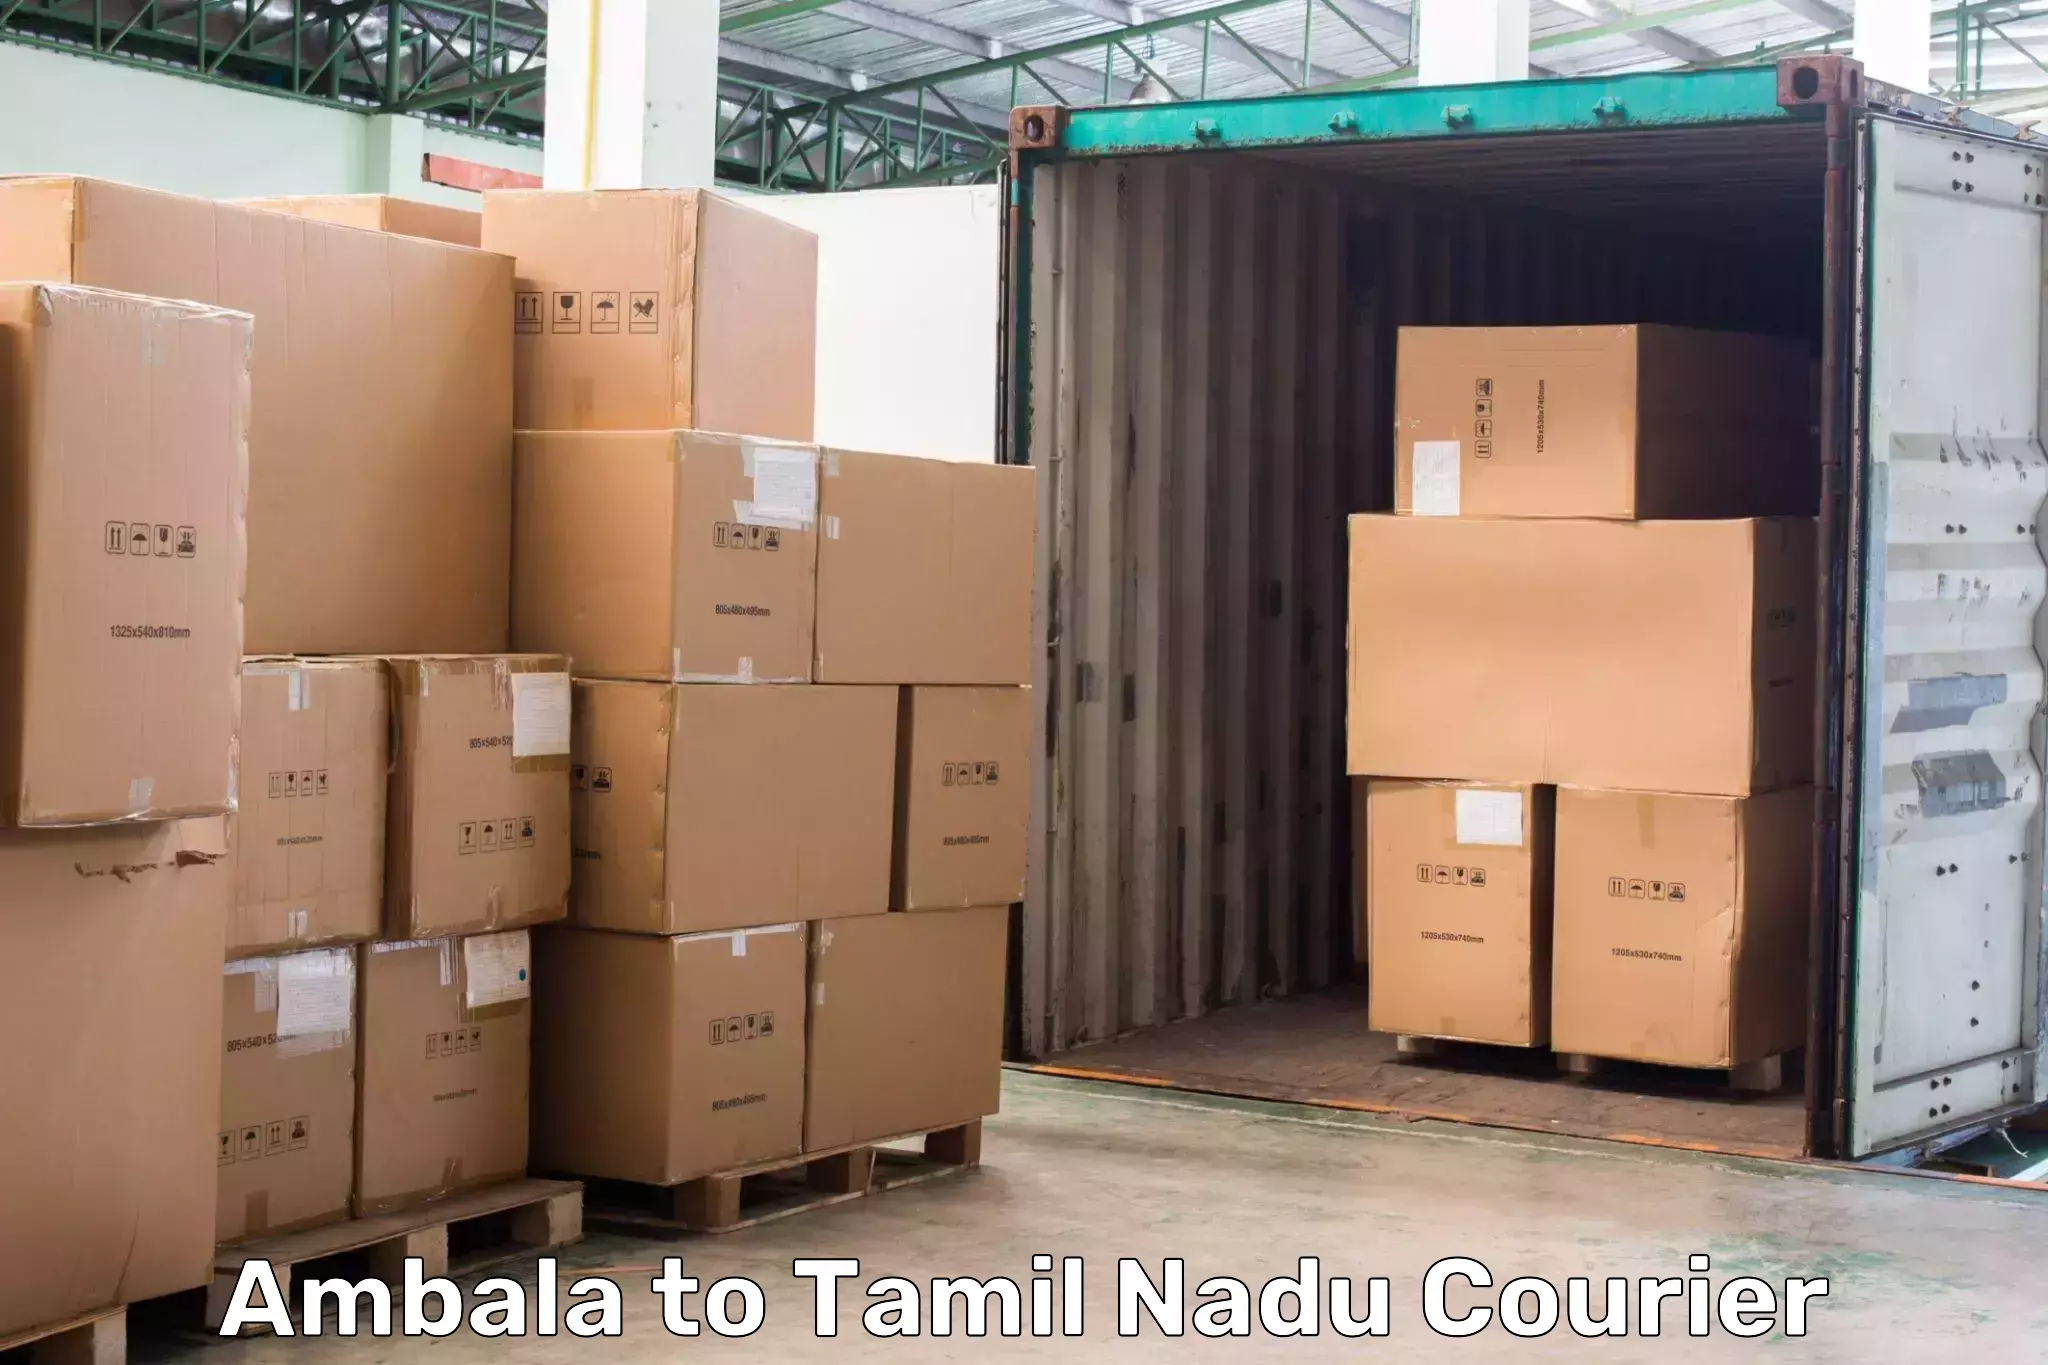 Courier service innovation Ambala to Gobichettipalayam